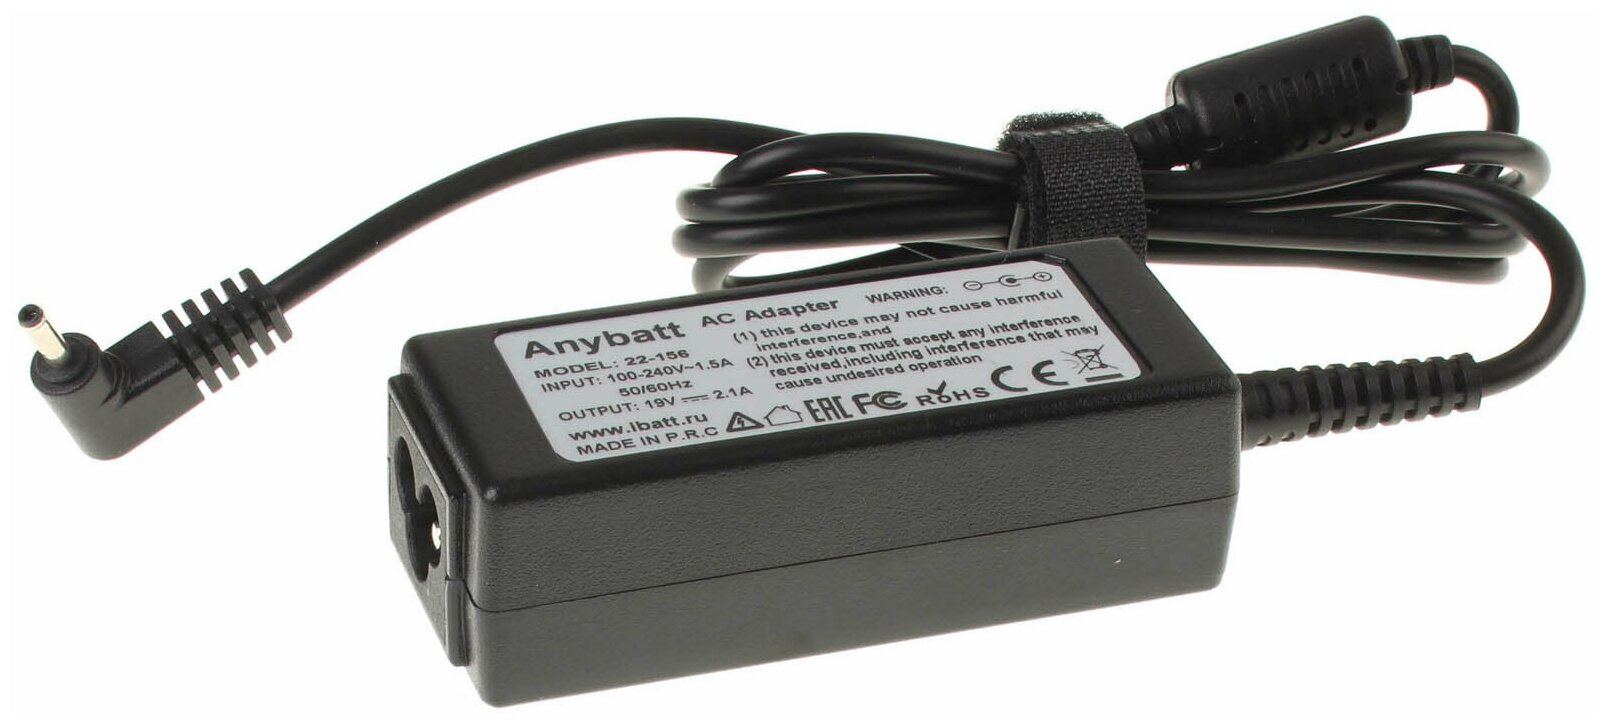 Блок питания Anybatt 22-B1-156 19V 2,1A, 40W, разъём 3.0*0.8 mm для Samsung PA-1400-14, AD-4019P, A13-040N2A